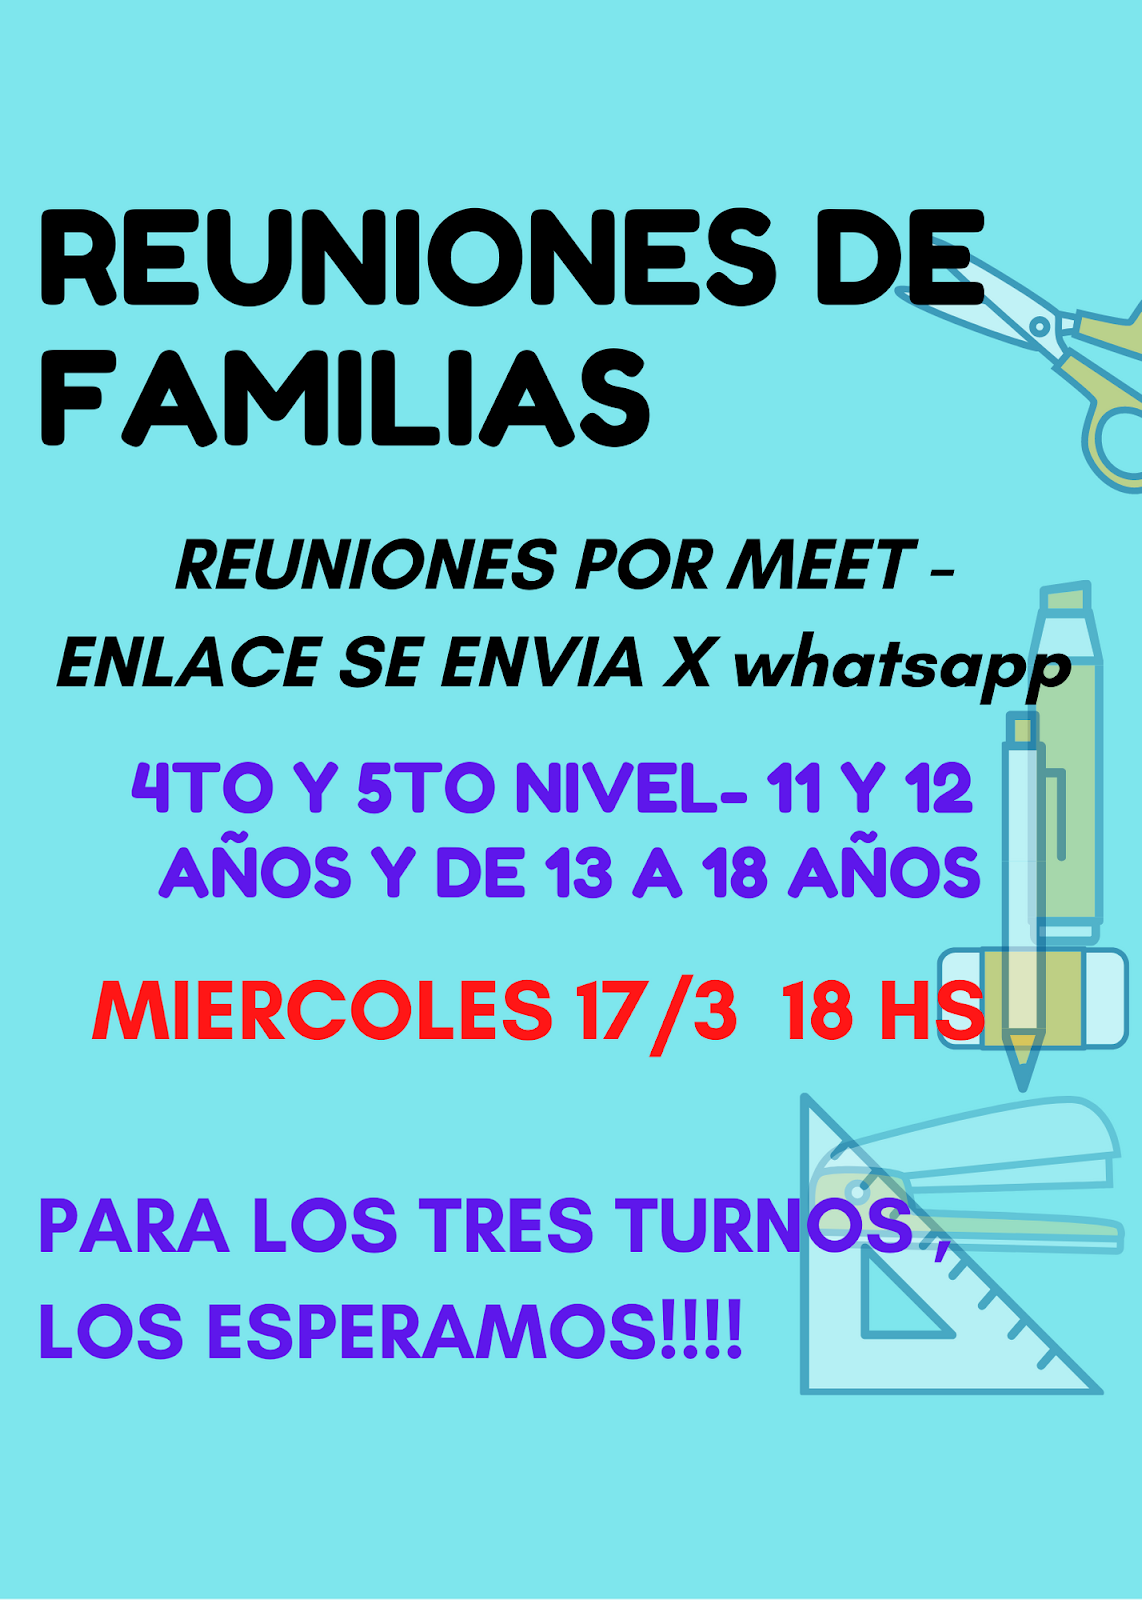 REUNIONES DE FAMILIAS DE 4 Y 5TO NIVEL PARA TODOS LOS TURNOS